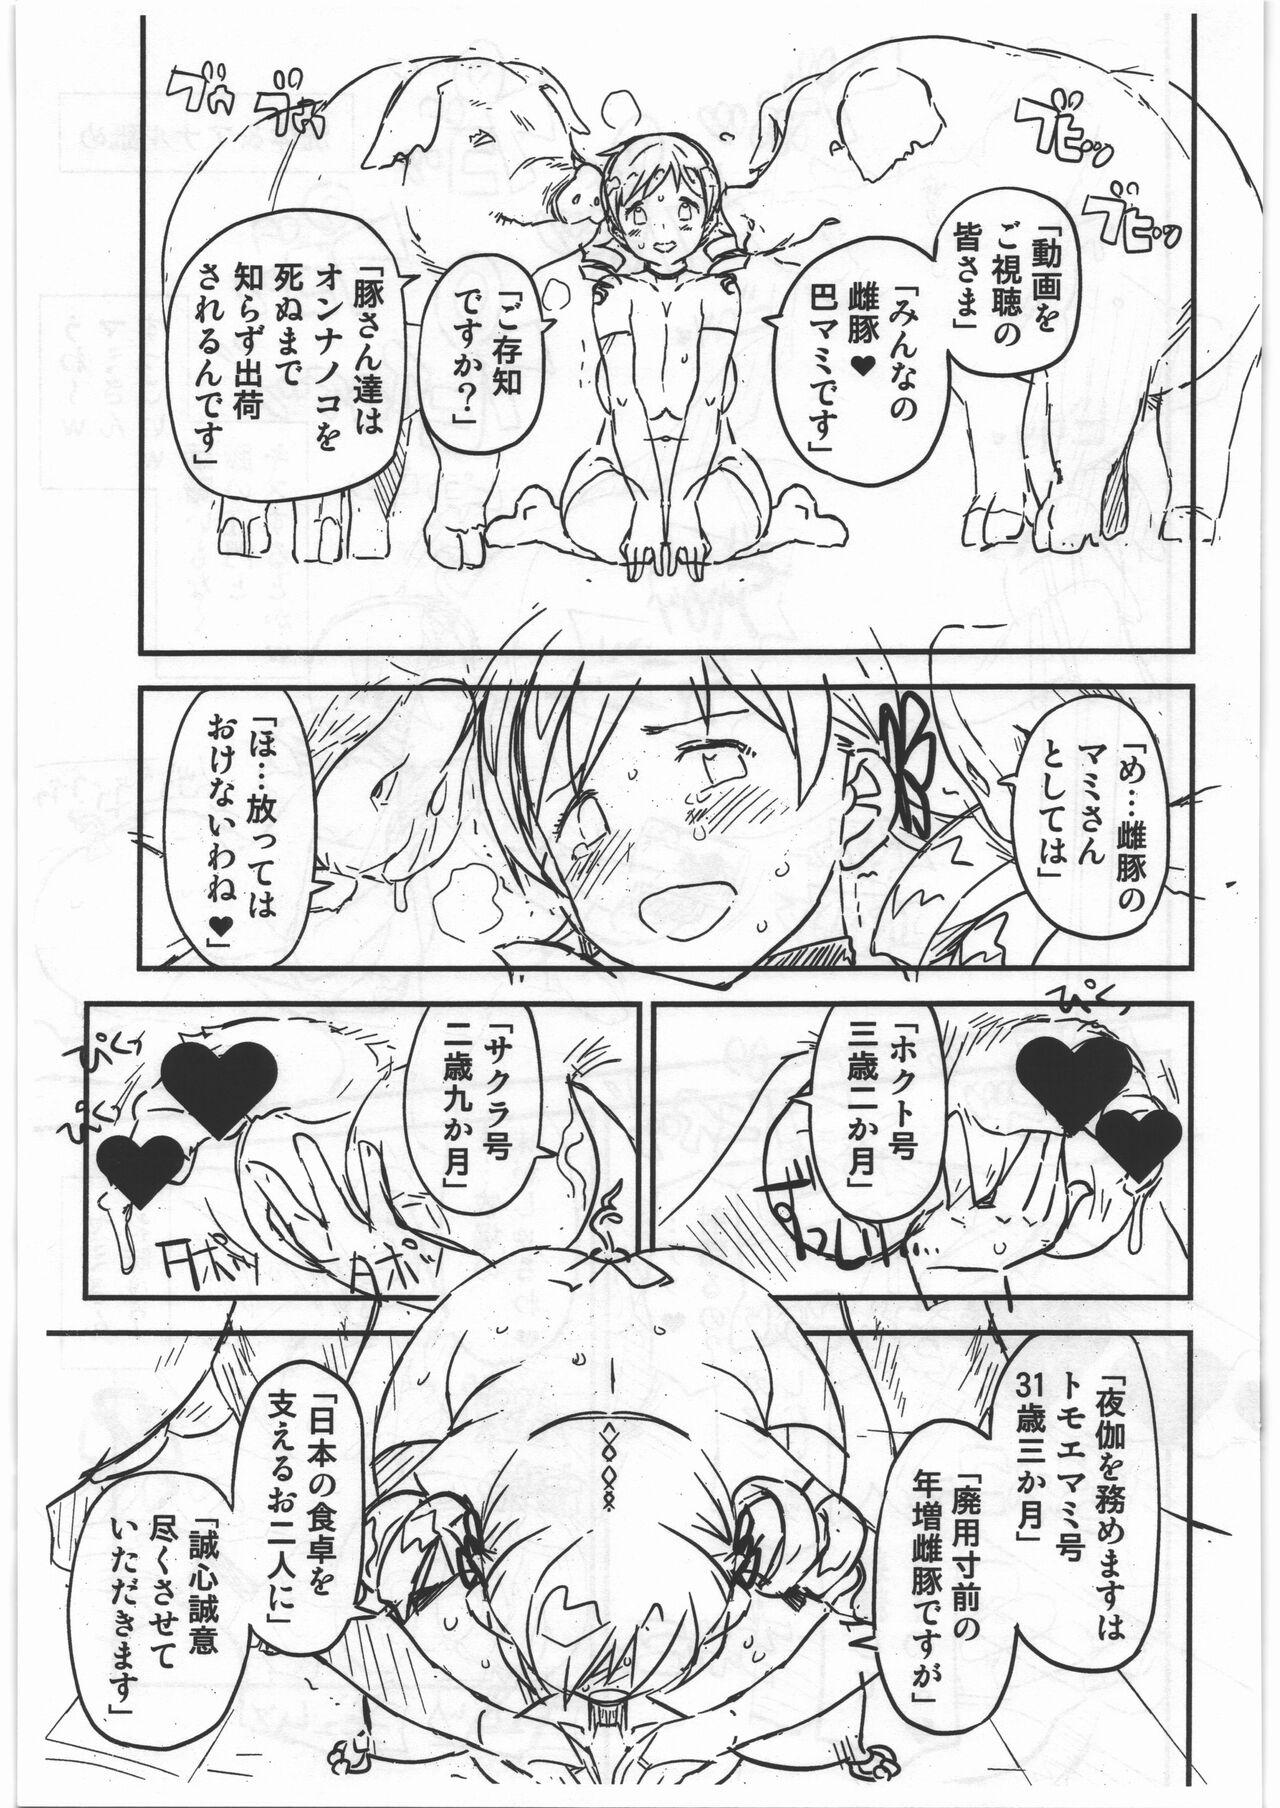 18yearsold CB:NG M★M - Puella magi madoka magica Monster hunter Hardfuck - Page 13